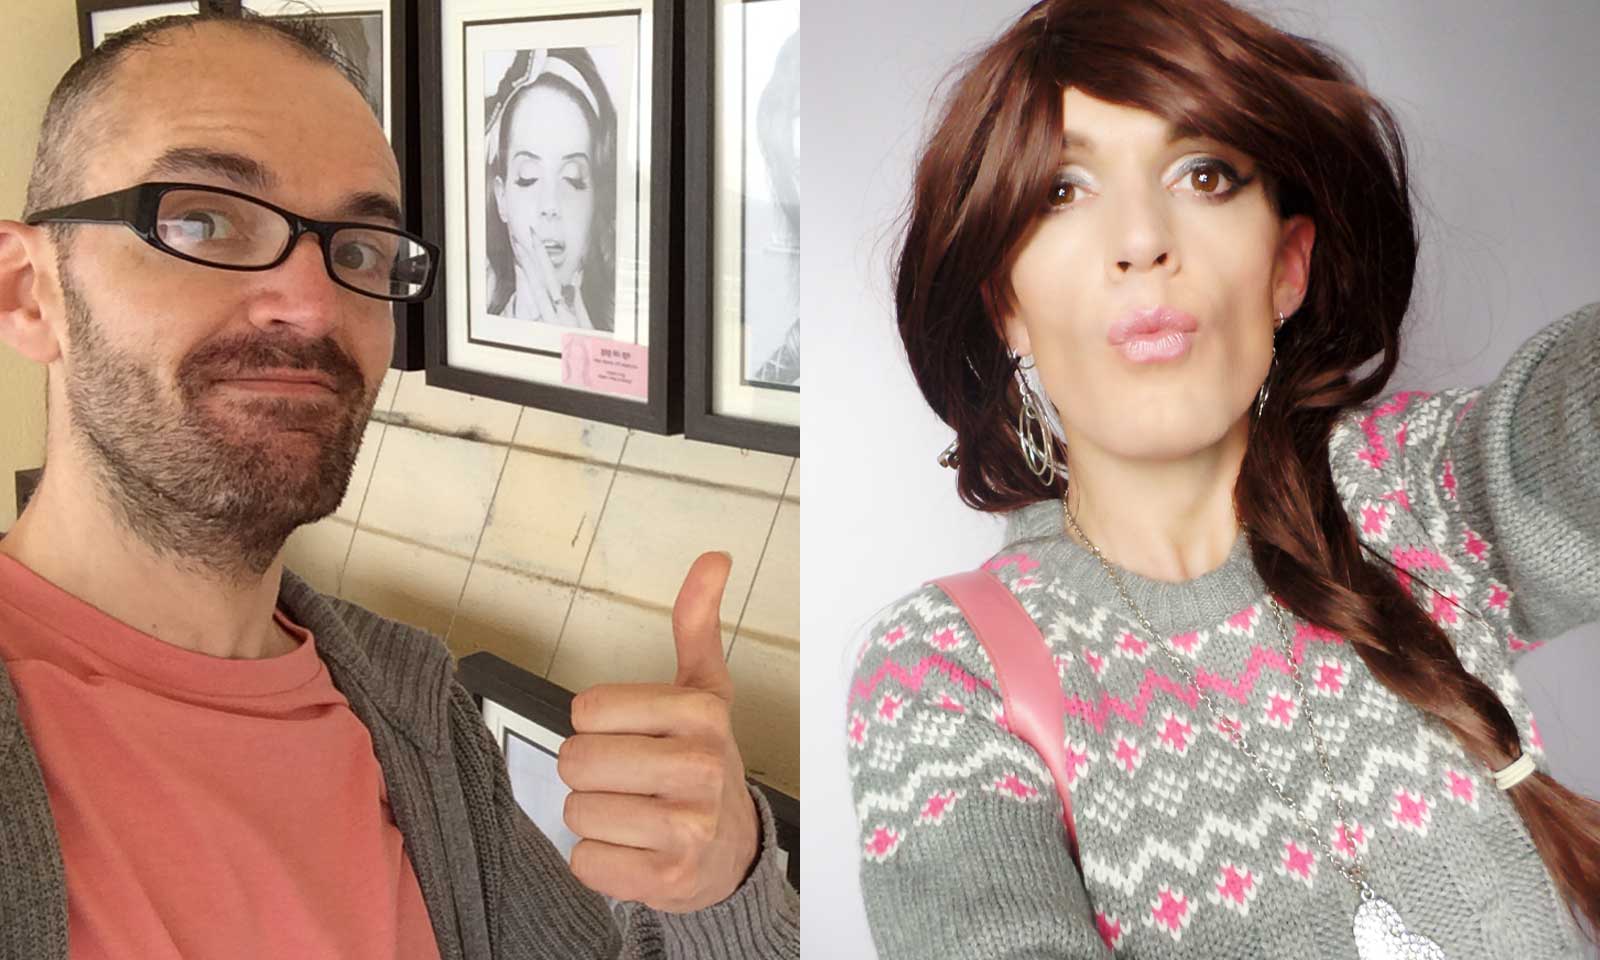 The Transgender Makeover - before and after, with Transgender Model & Artist Sophie Lawson